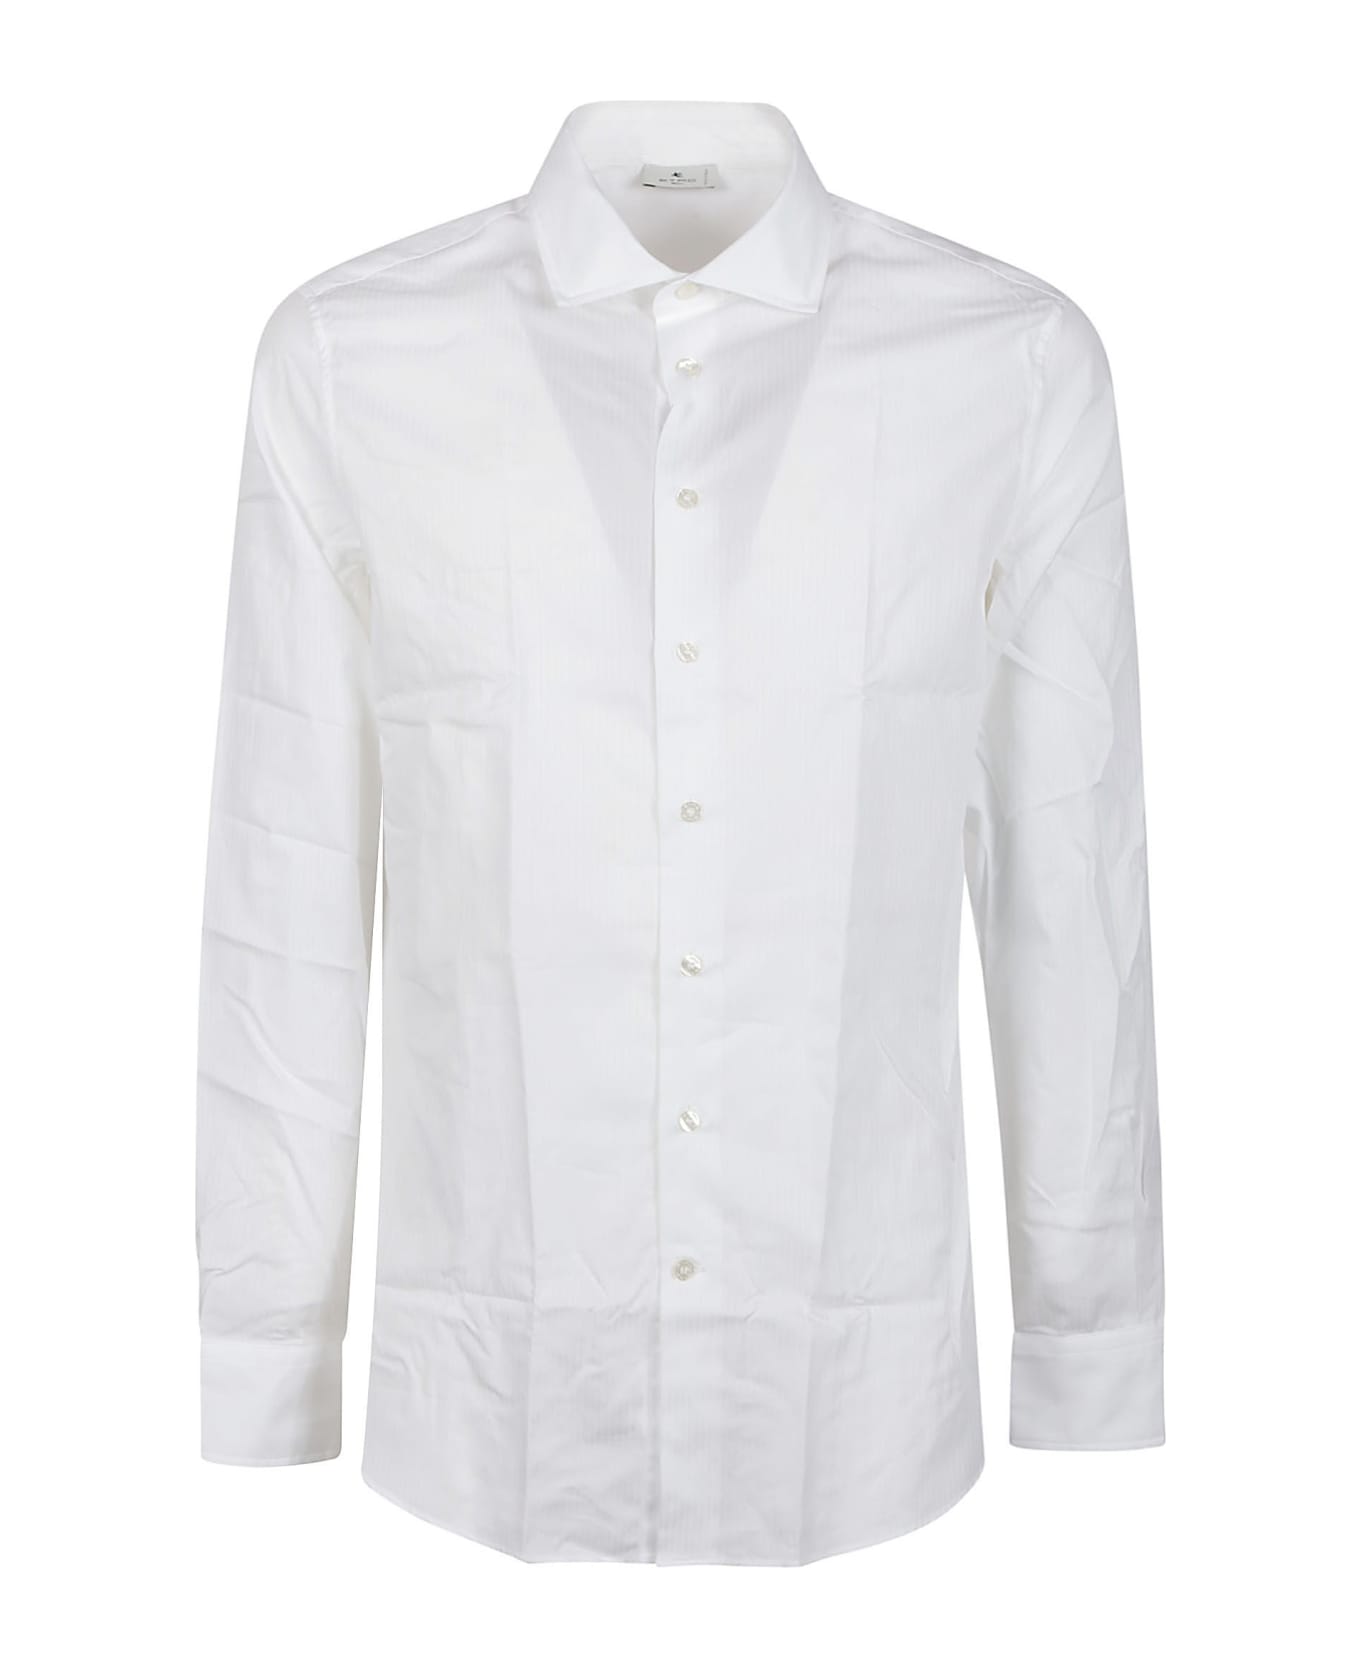 Etro Fuji Shirt - White